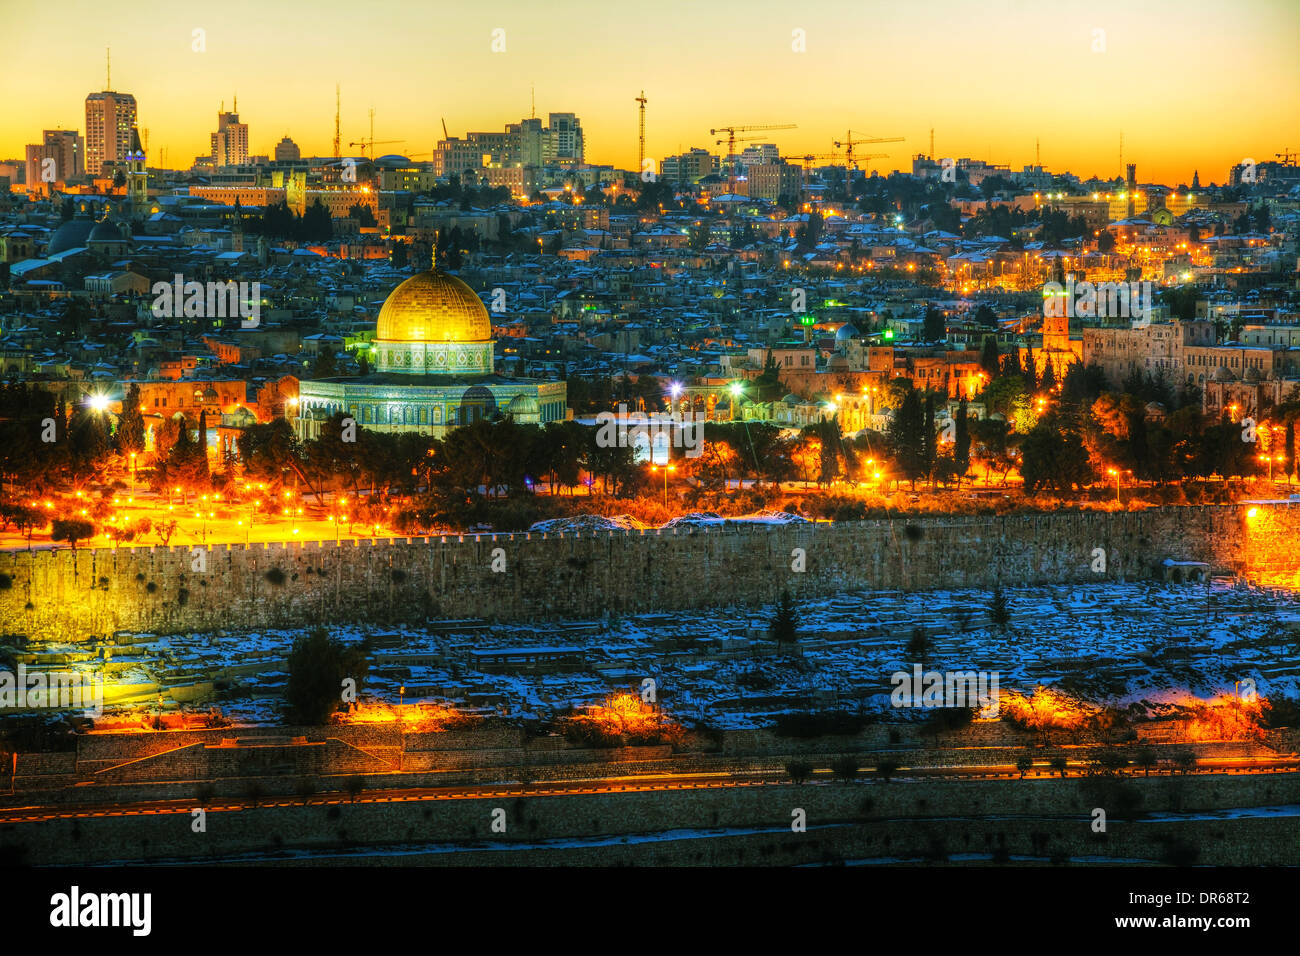 Panorama de la Ciudad Vieja de Jerusalén, Israel con la mezquita de cúpula dorada Foto de stock